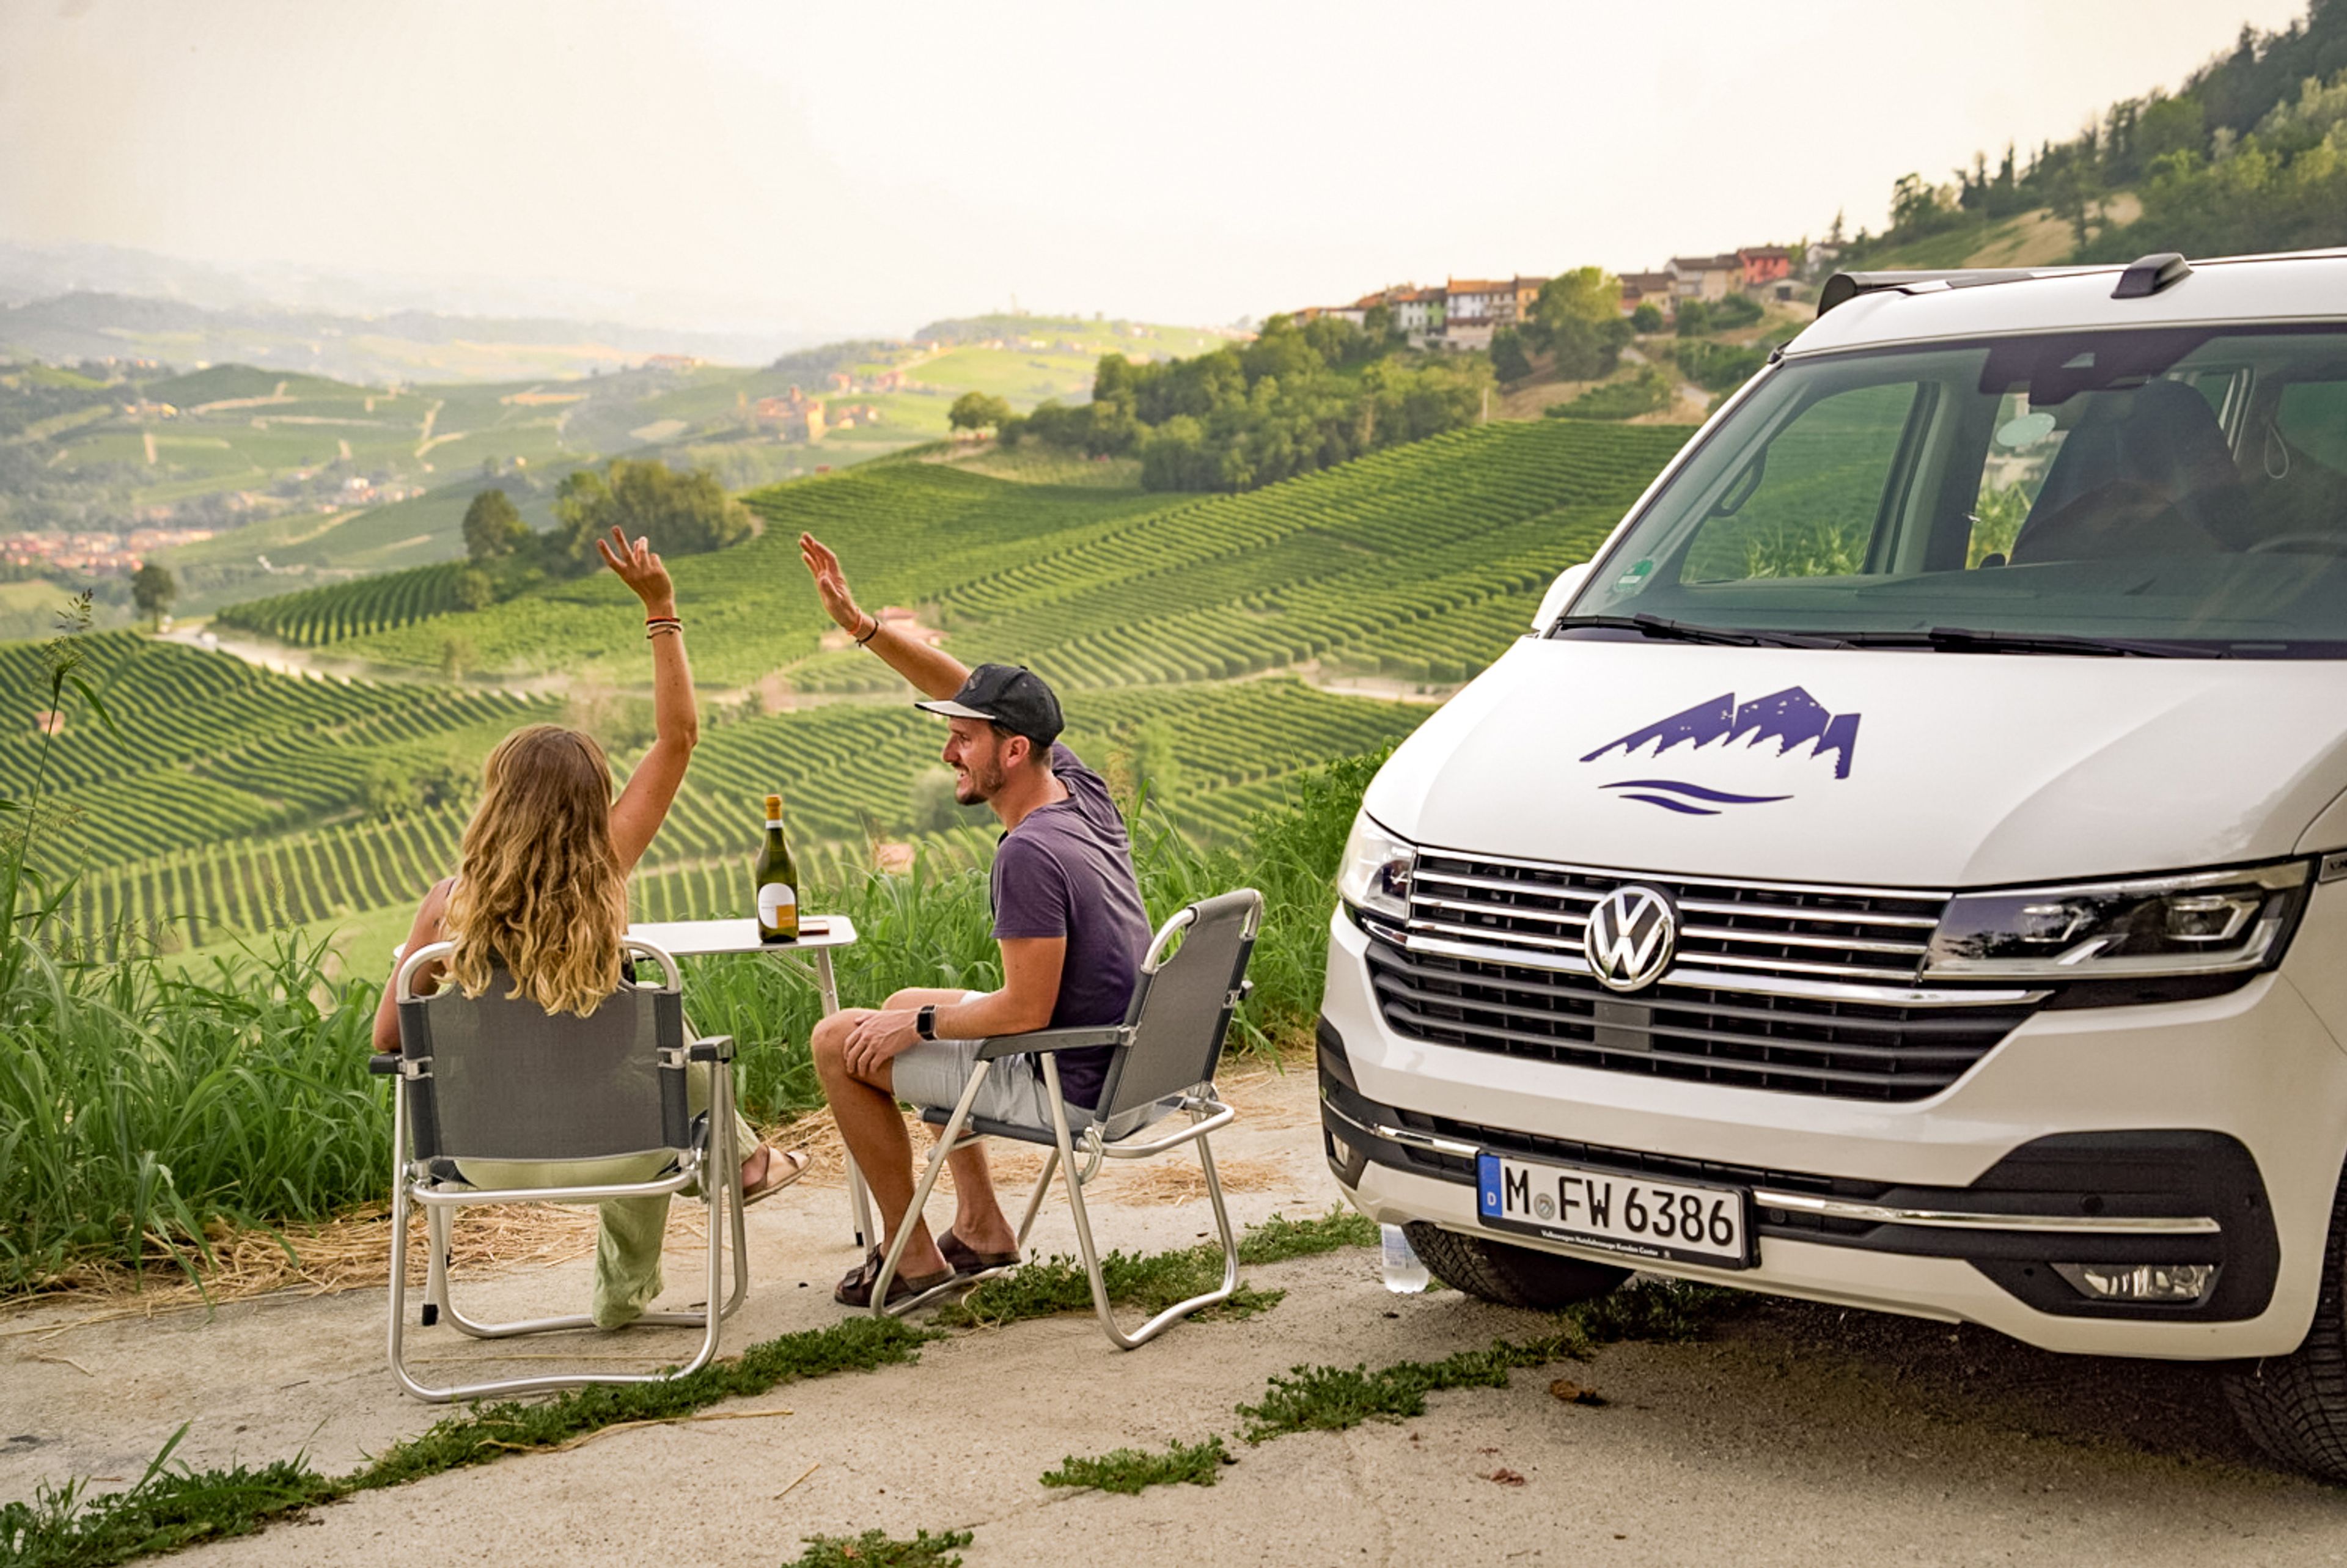 una coppia che si gode il suo romantico viaggio in campeggio nella regione vinicola italiana del Piemonte